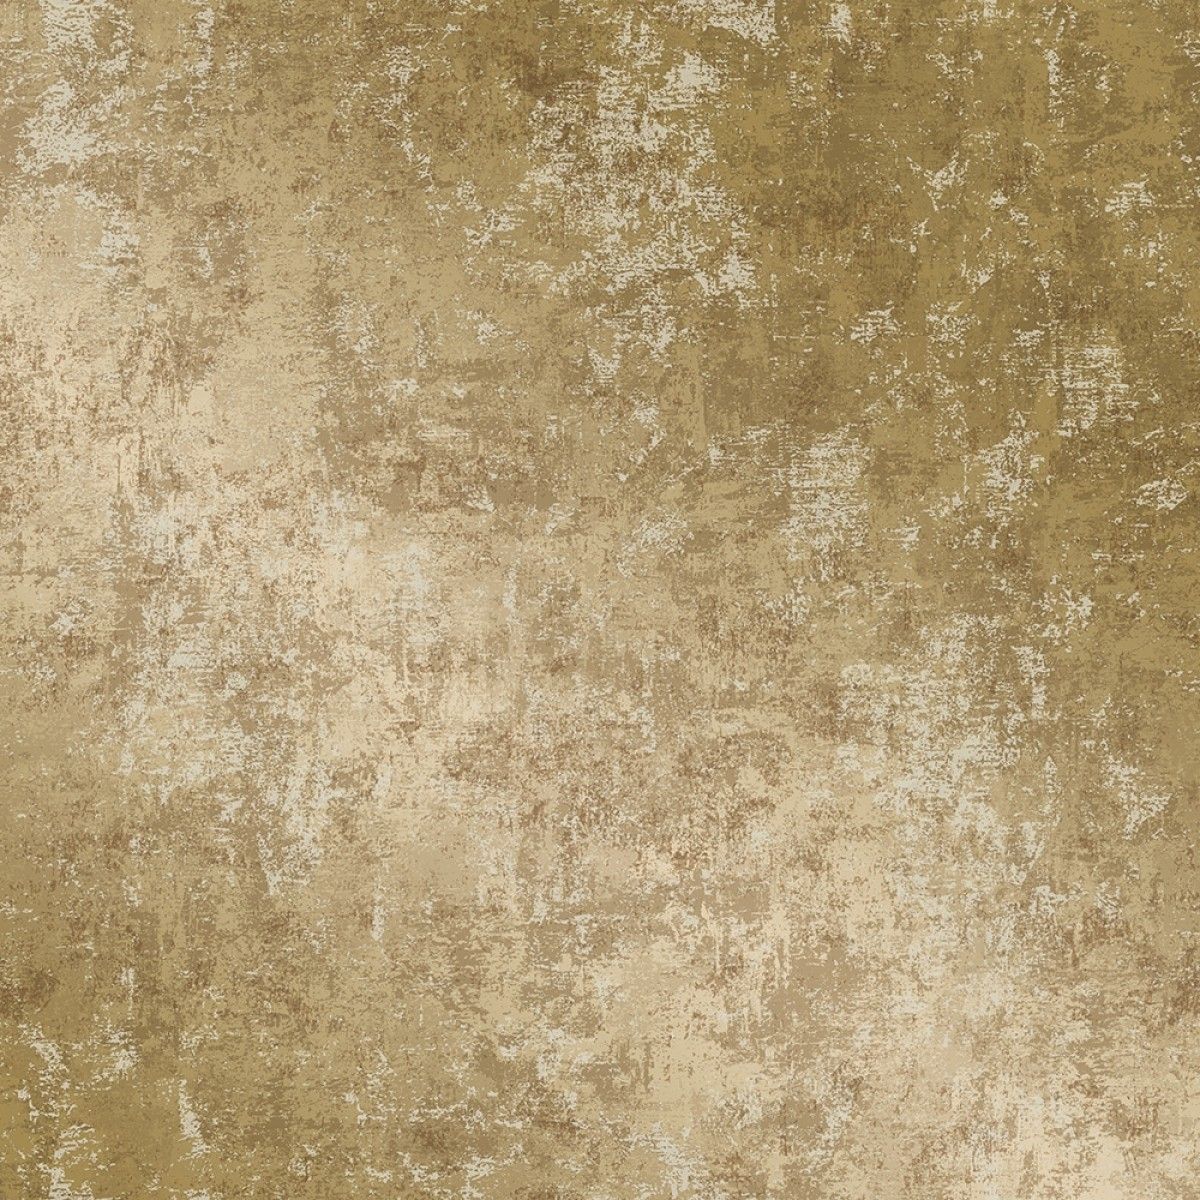 Distressed Gold Leaf  DI543 Self-Adhesive Wallpaper